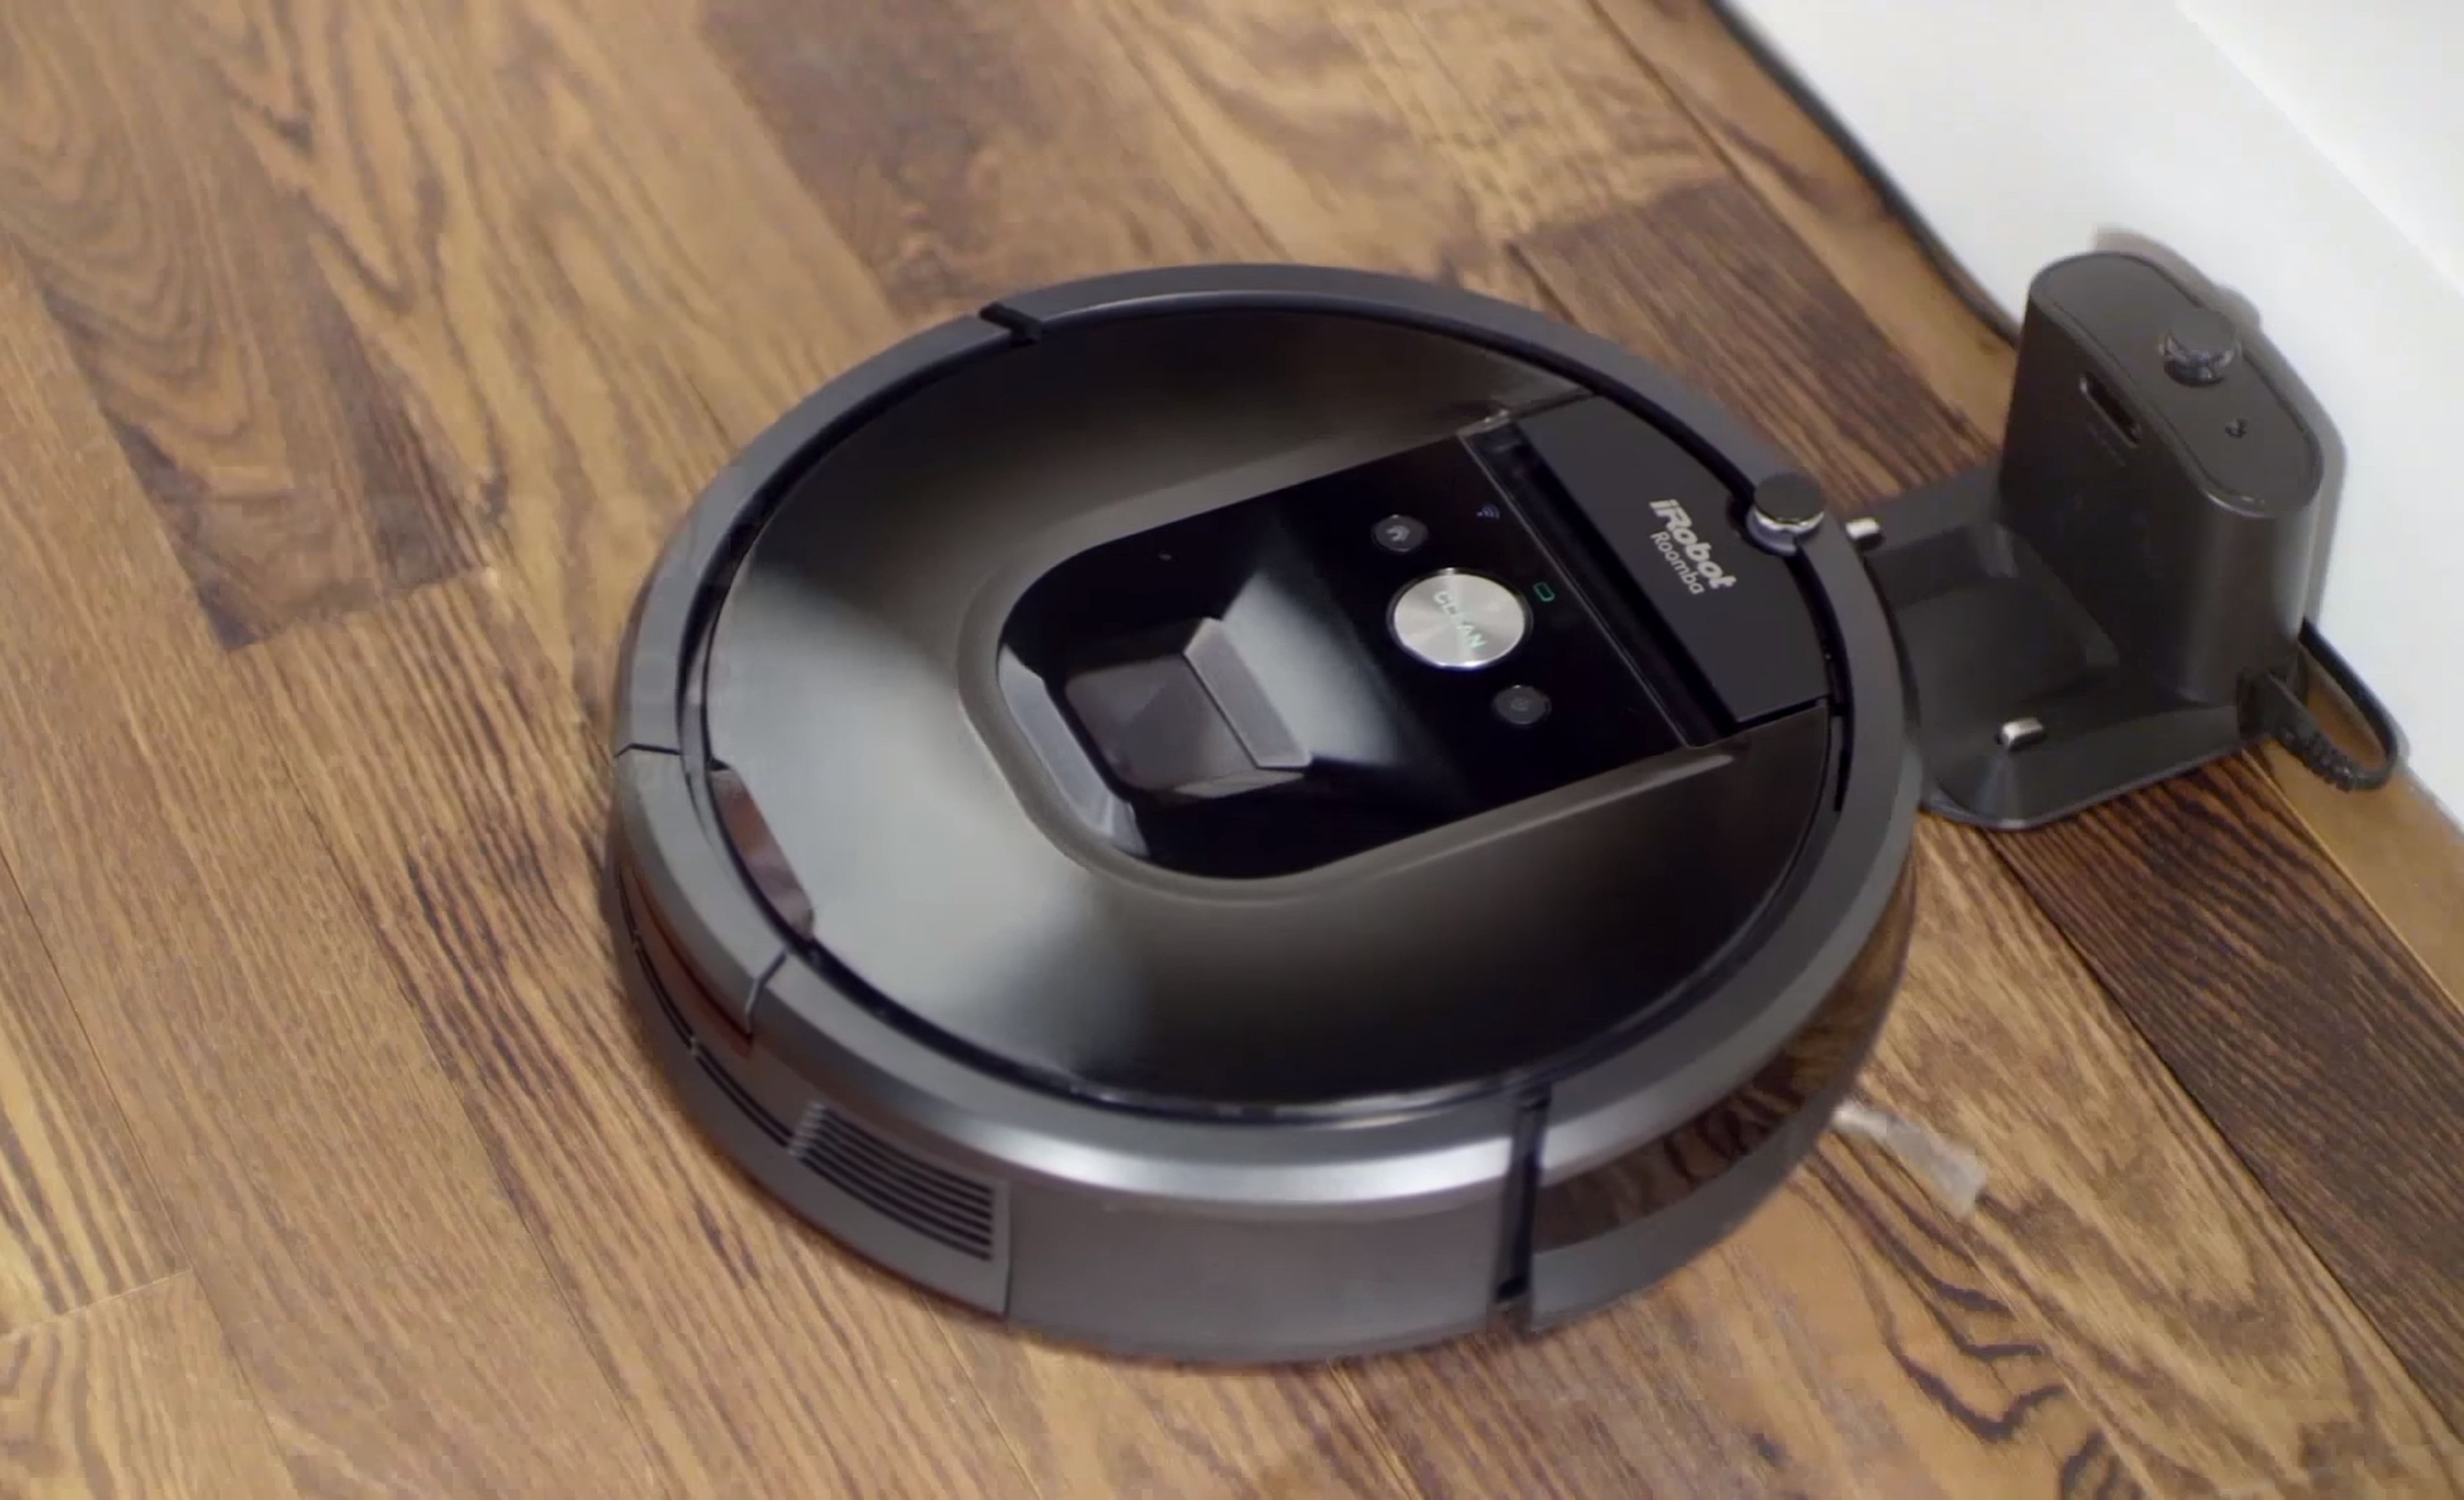 Hazte con un robot de limpieza Roomba 981 a mitad de precio, con un descuento de 500€